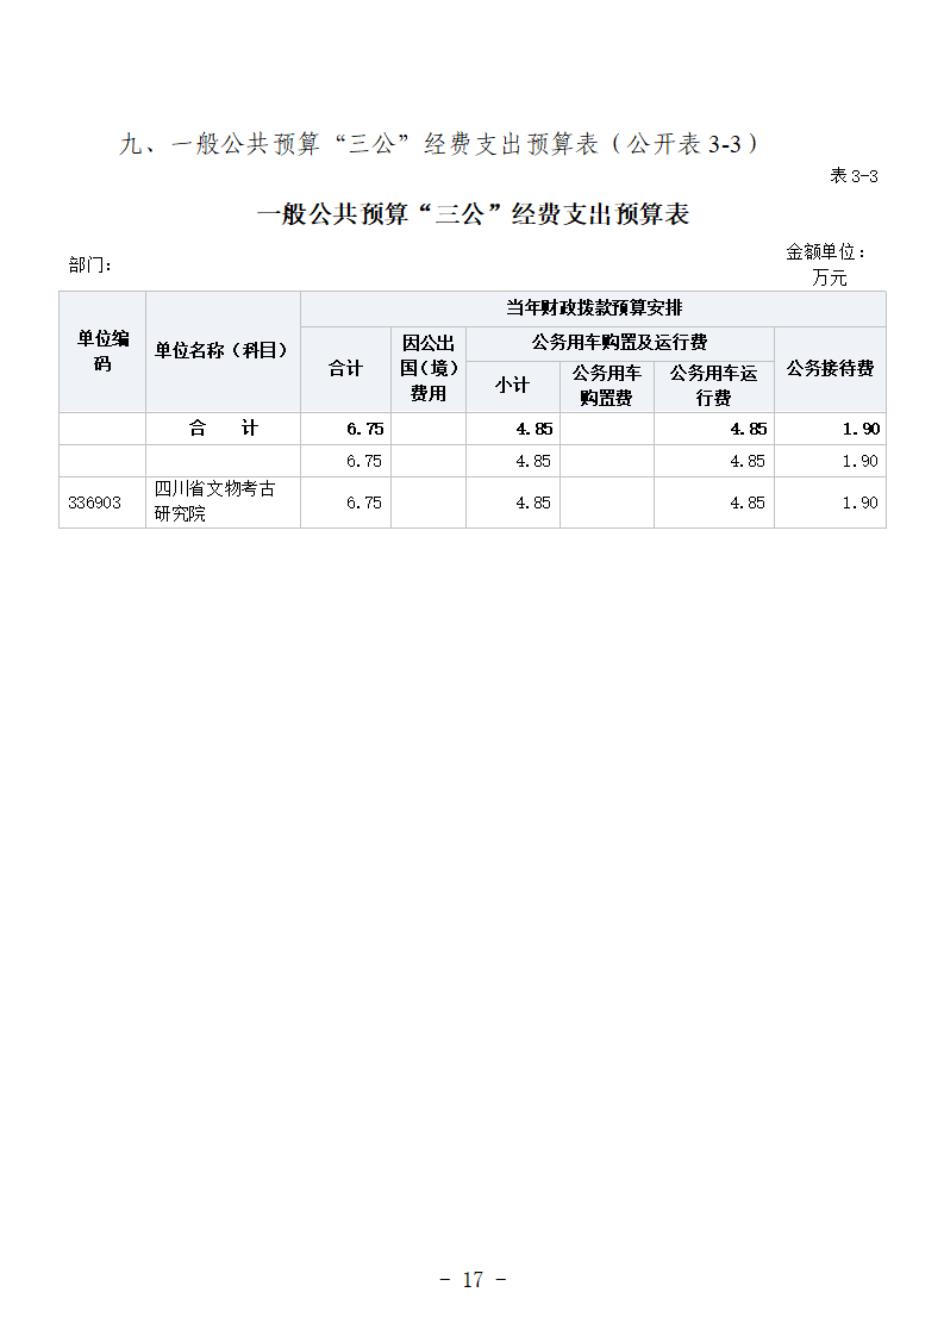 省考古院2024年四川省省级单位预算公开模板(3.14)_18.jpg